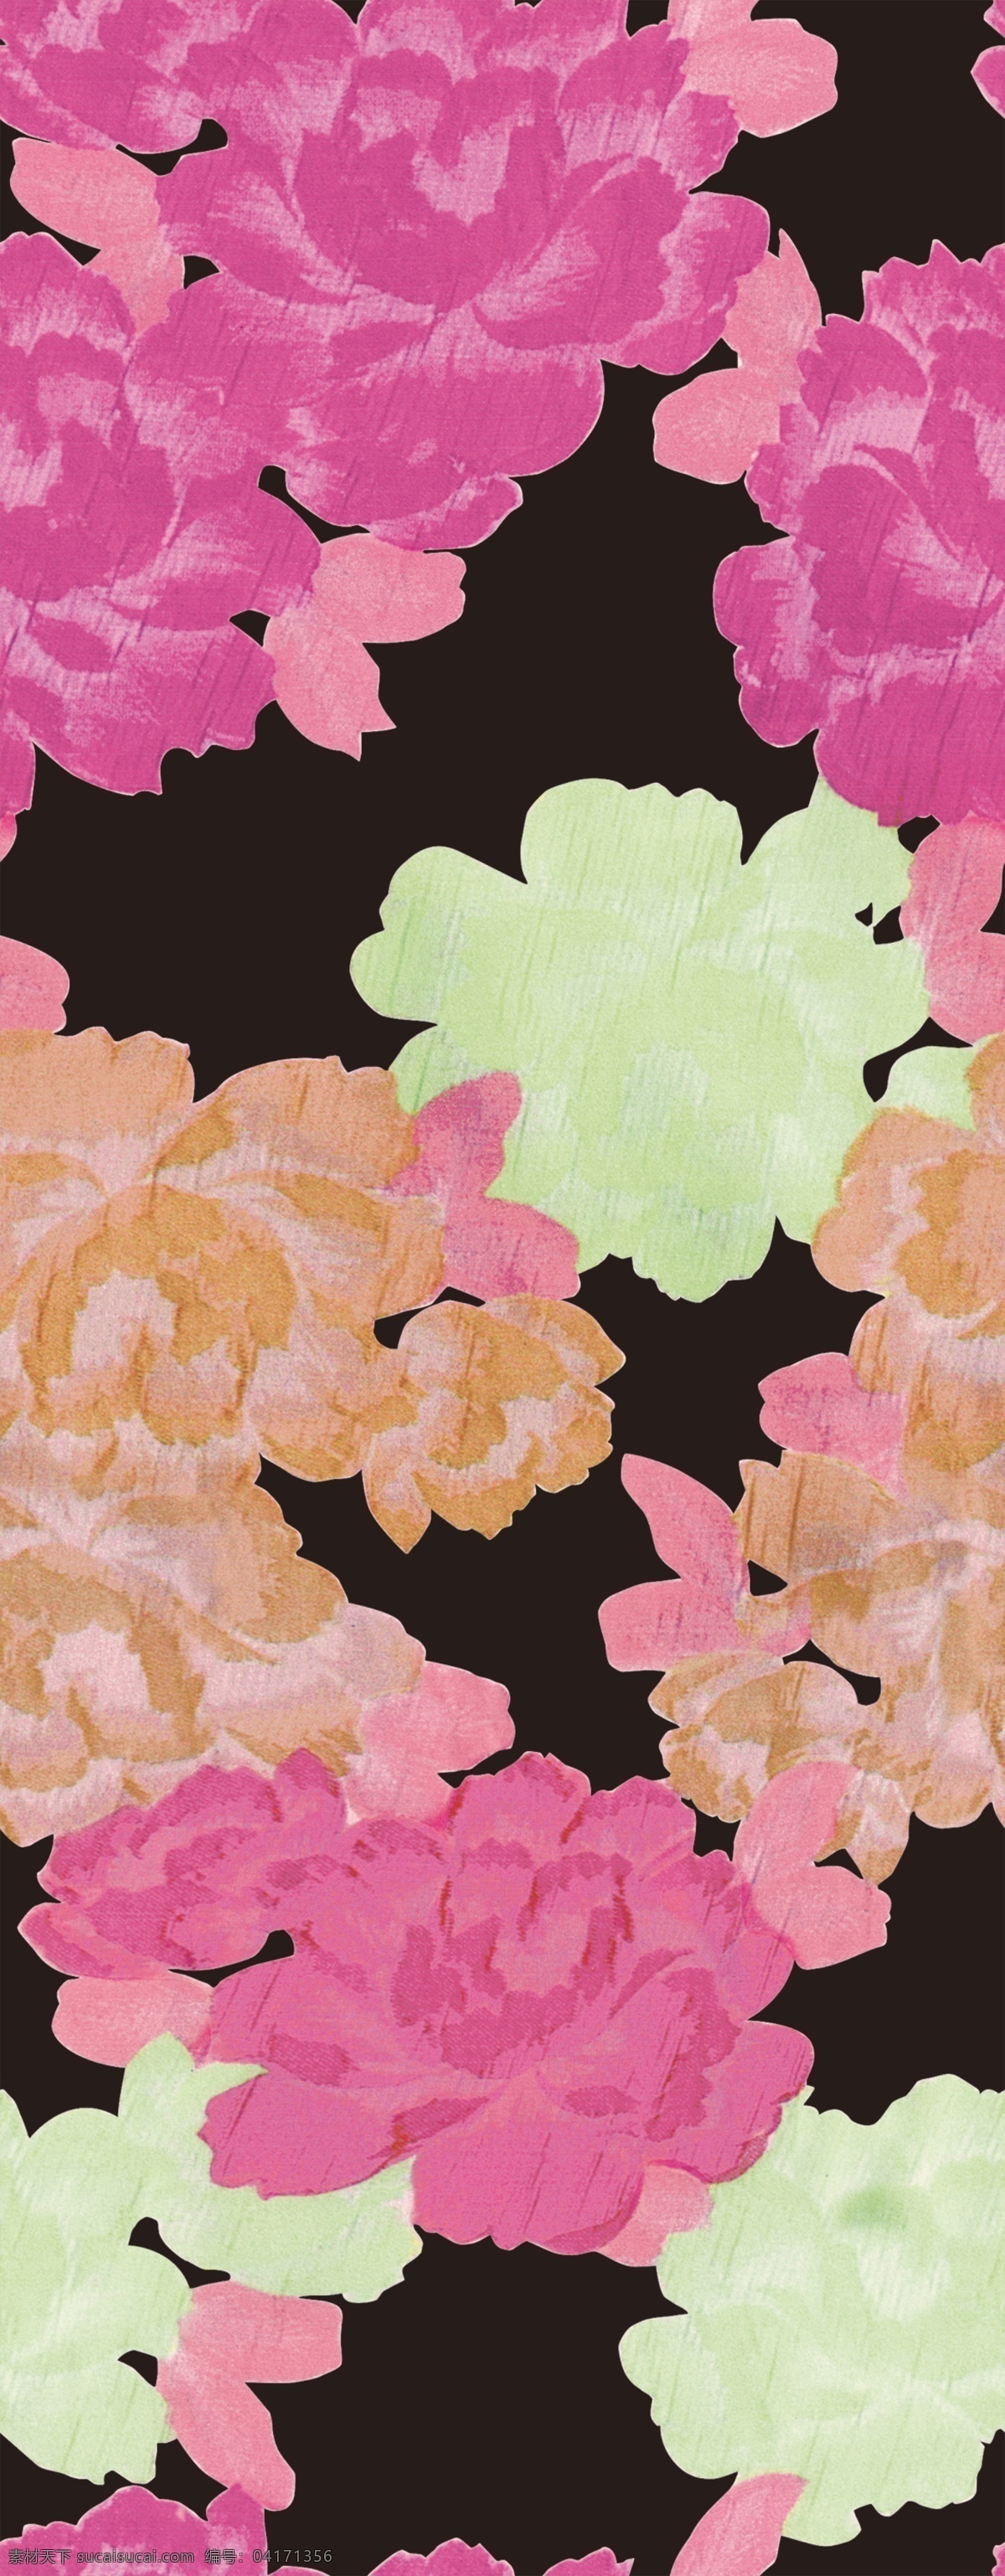 数码 印花 玫瑰花 拼接 回位 纹理 图 数码印花 服装设计 2016 时尚 分层素材 黑底 红花 浅绿花 粉色